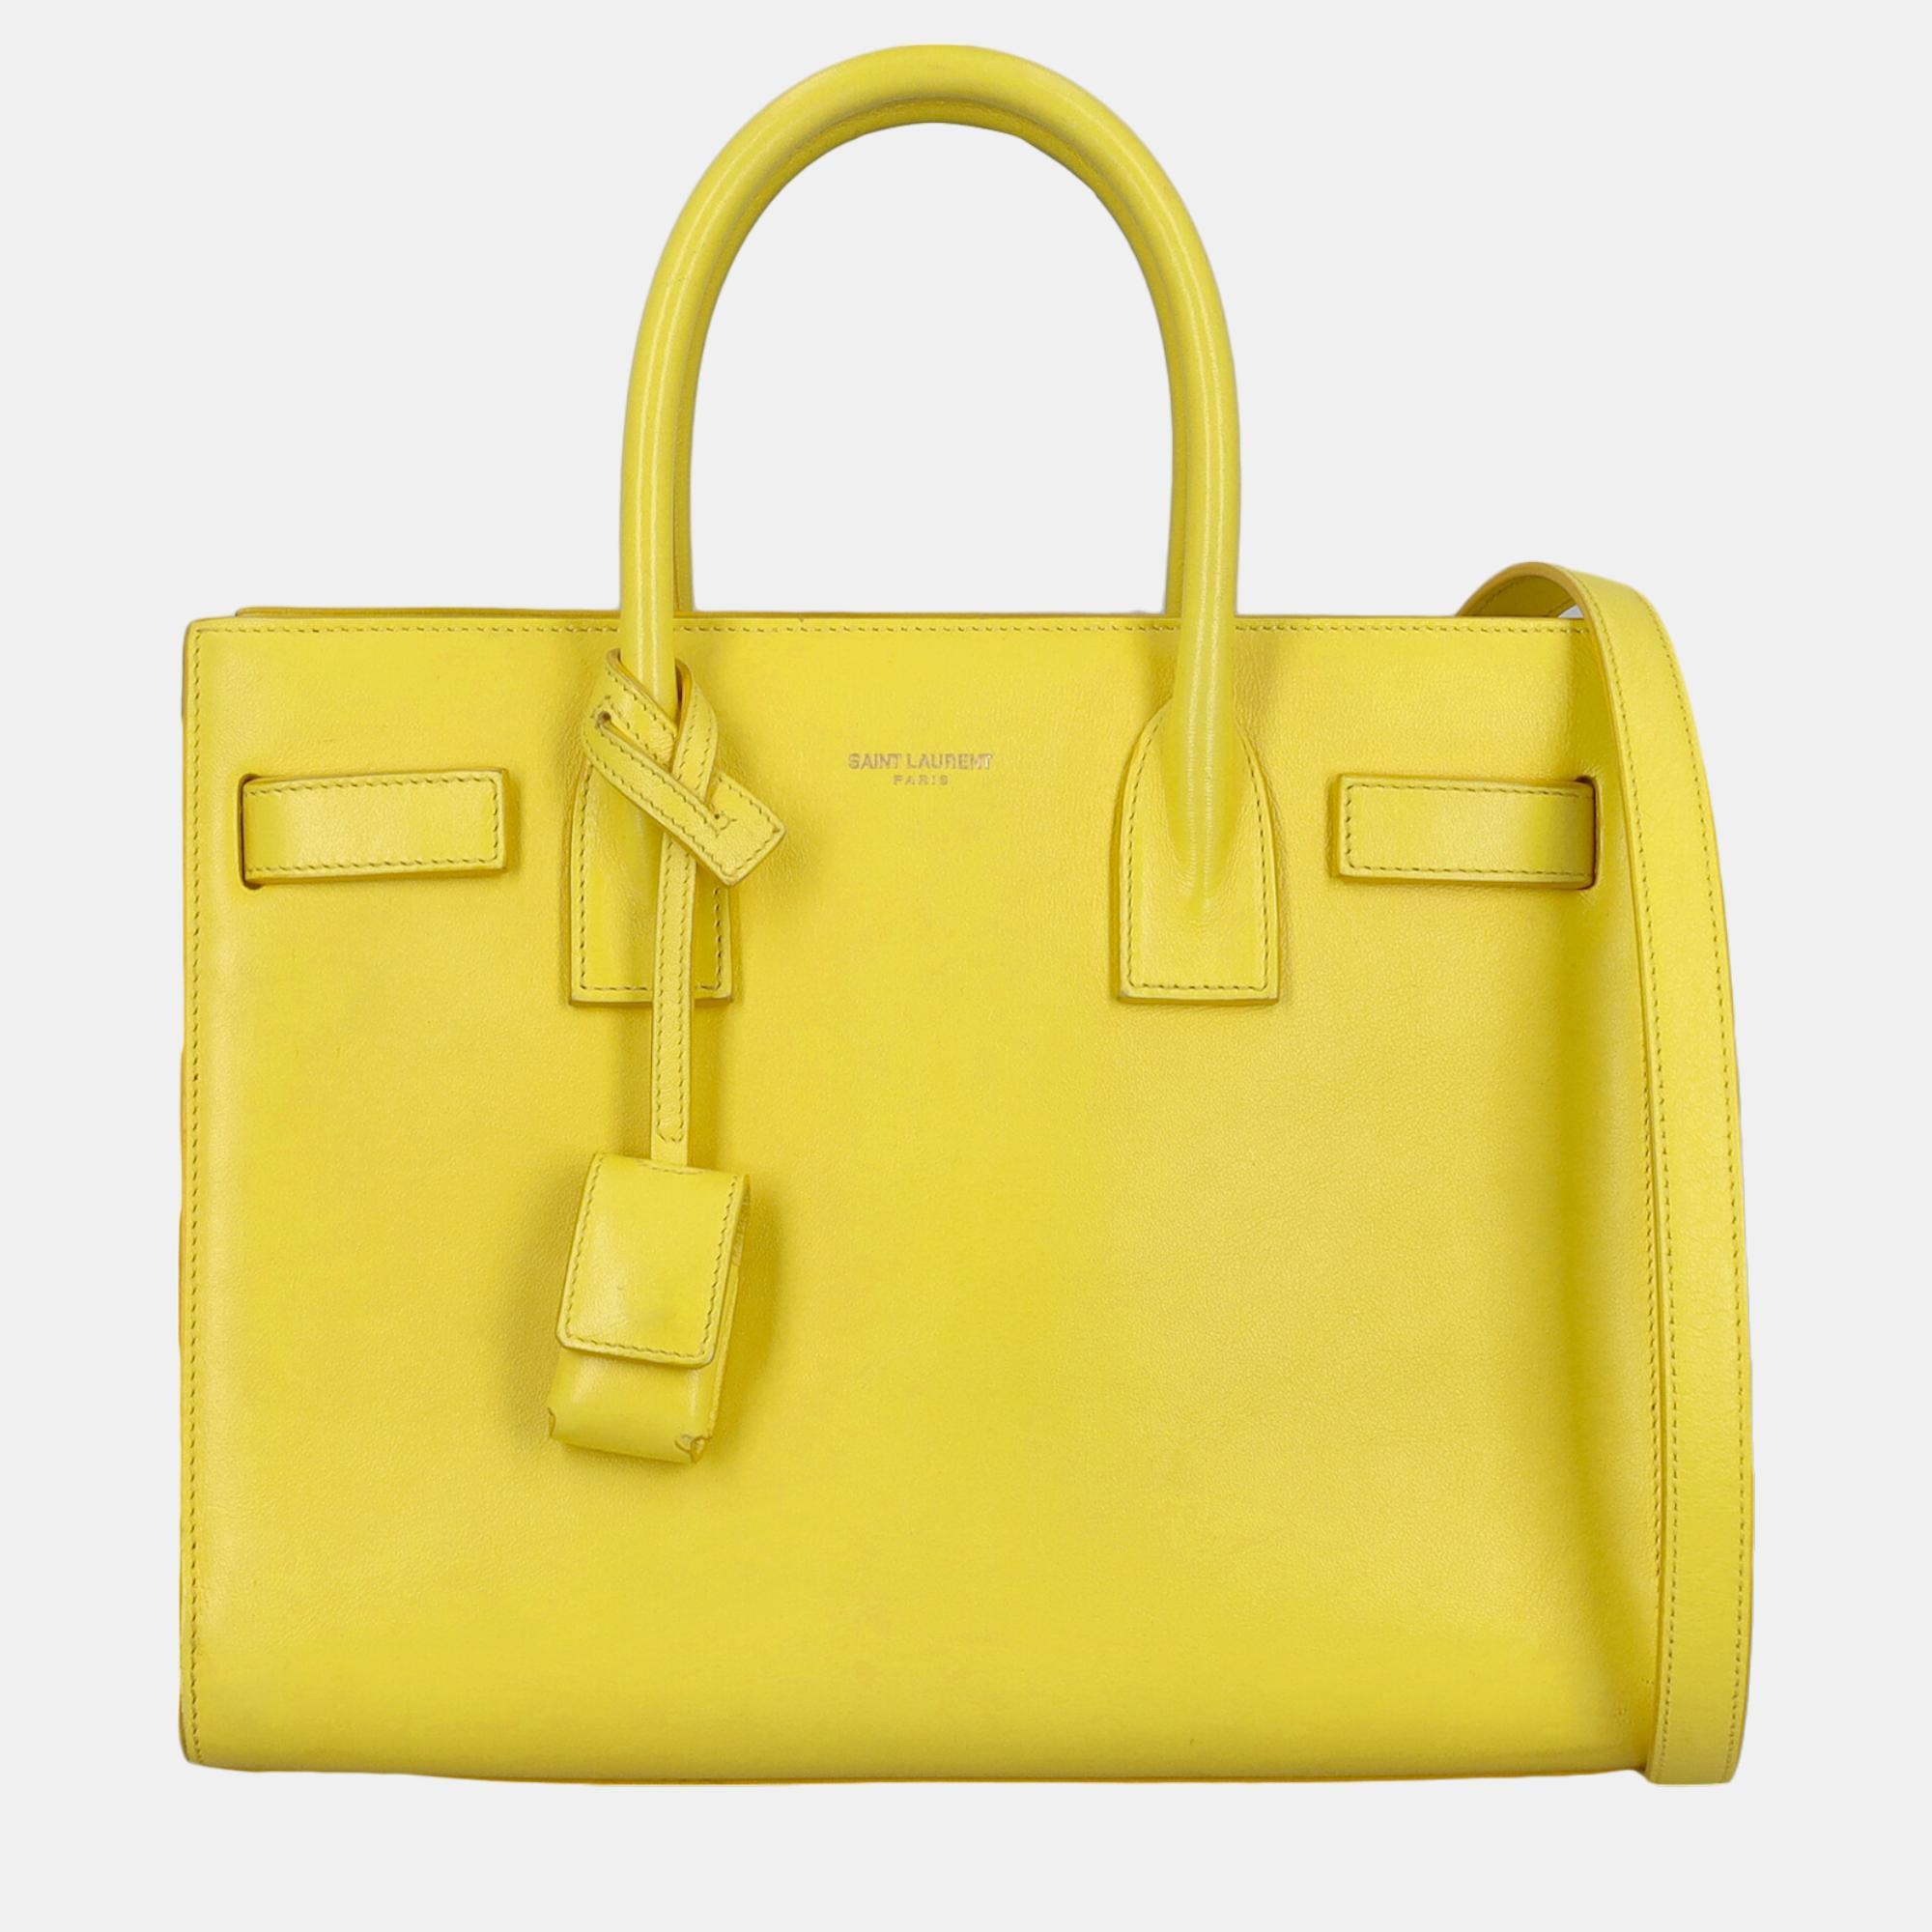 Saint Laurent Sac De Jour -  Women's Leather Tote Bag - Yellow - One Size